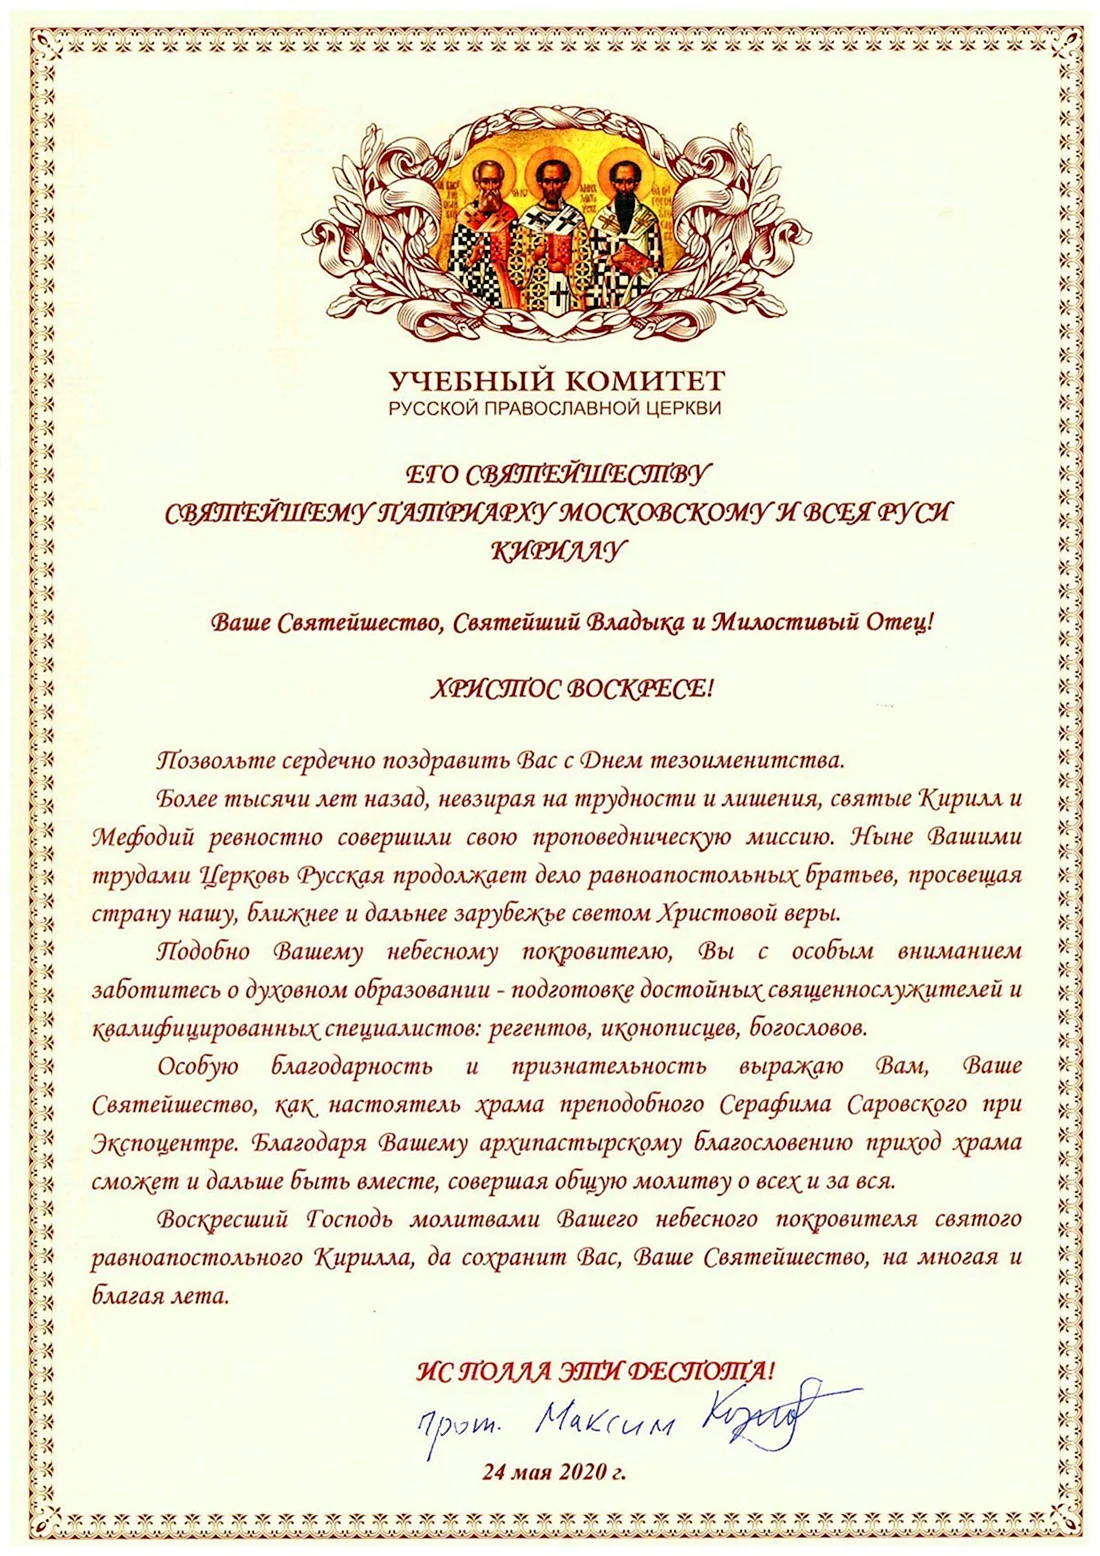 Поздравление с днем тезоименитства Патриарха Кирилла